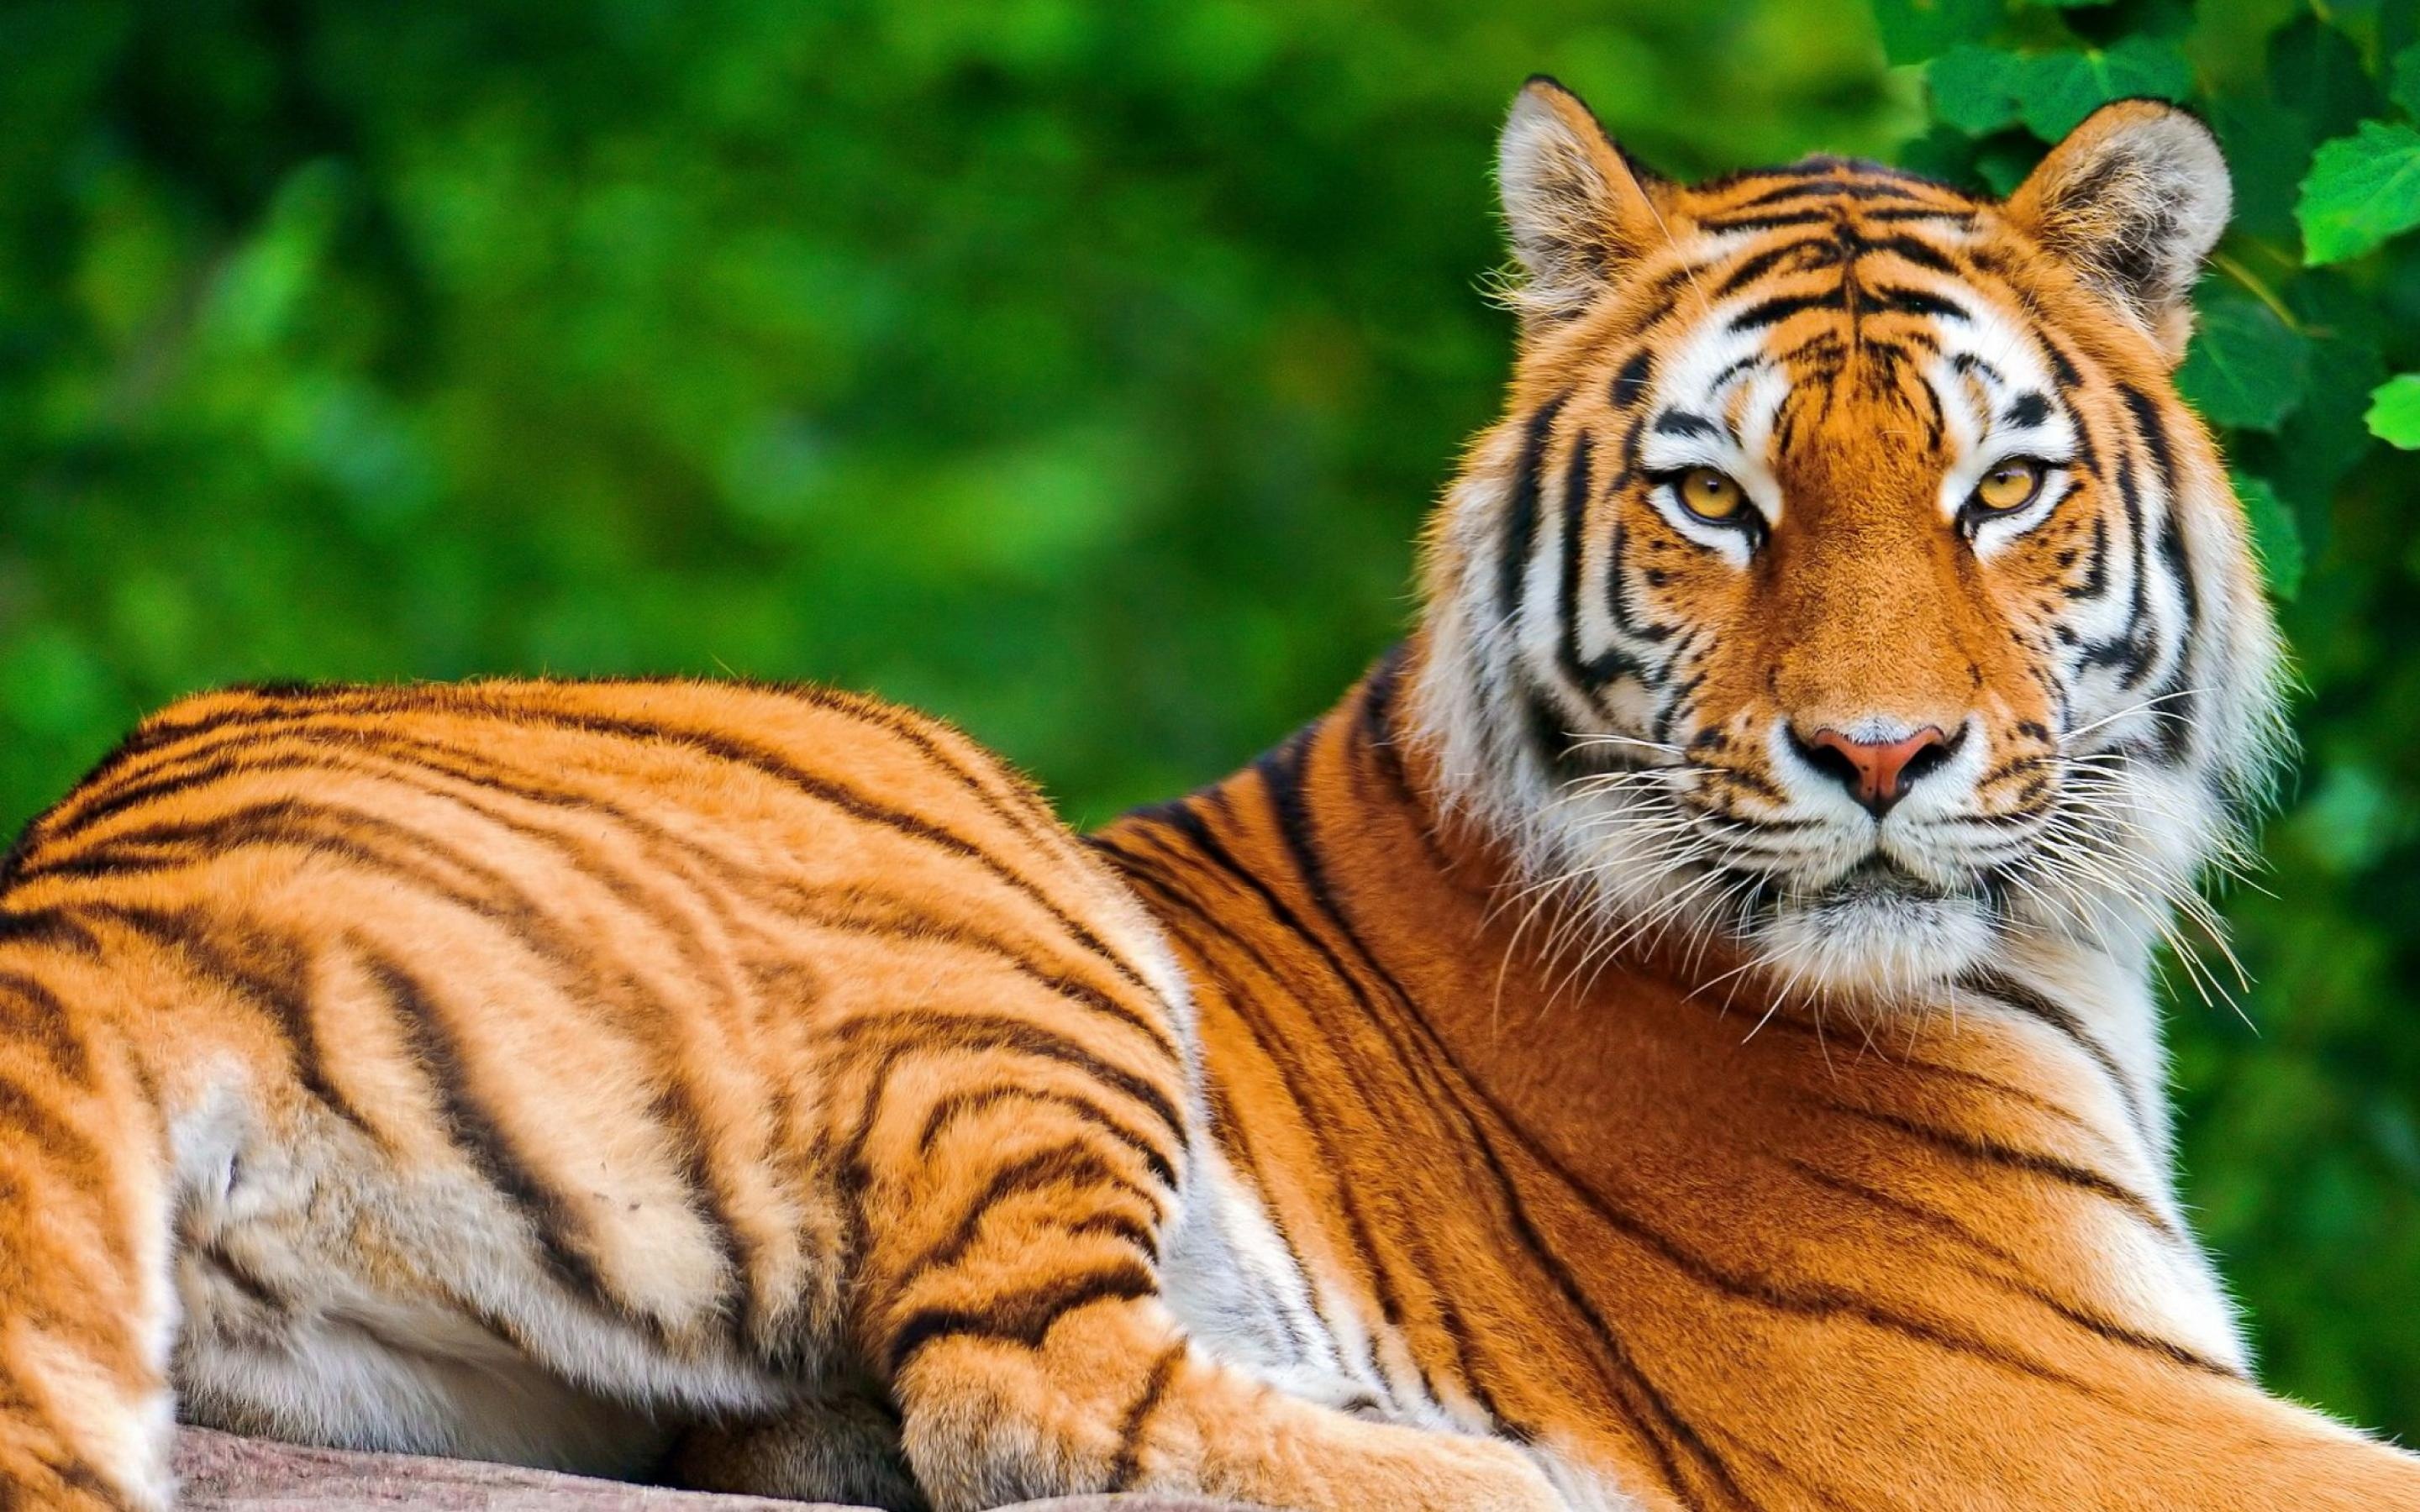 More Beautiful Tiger Wallpaper